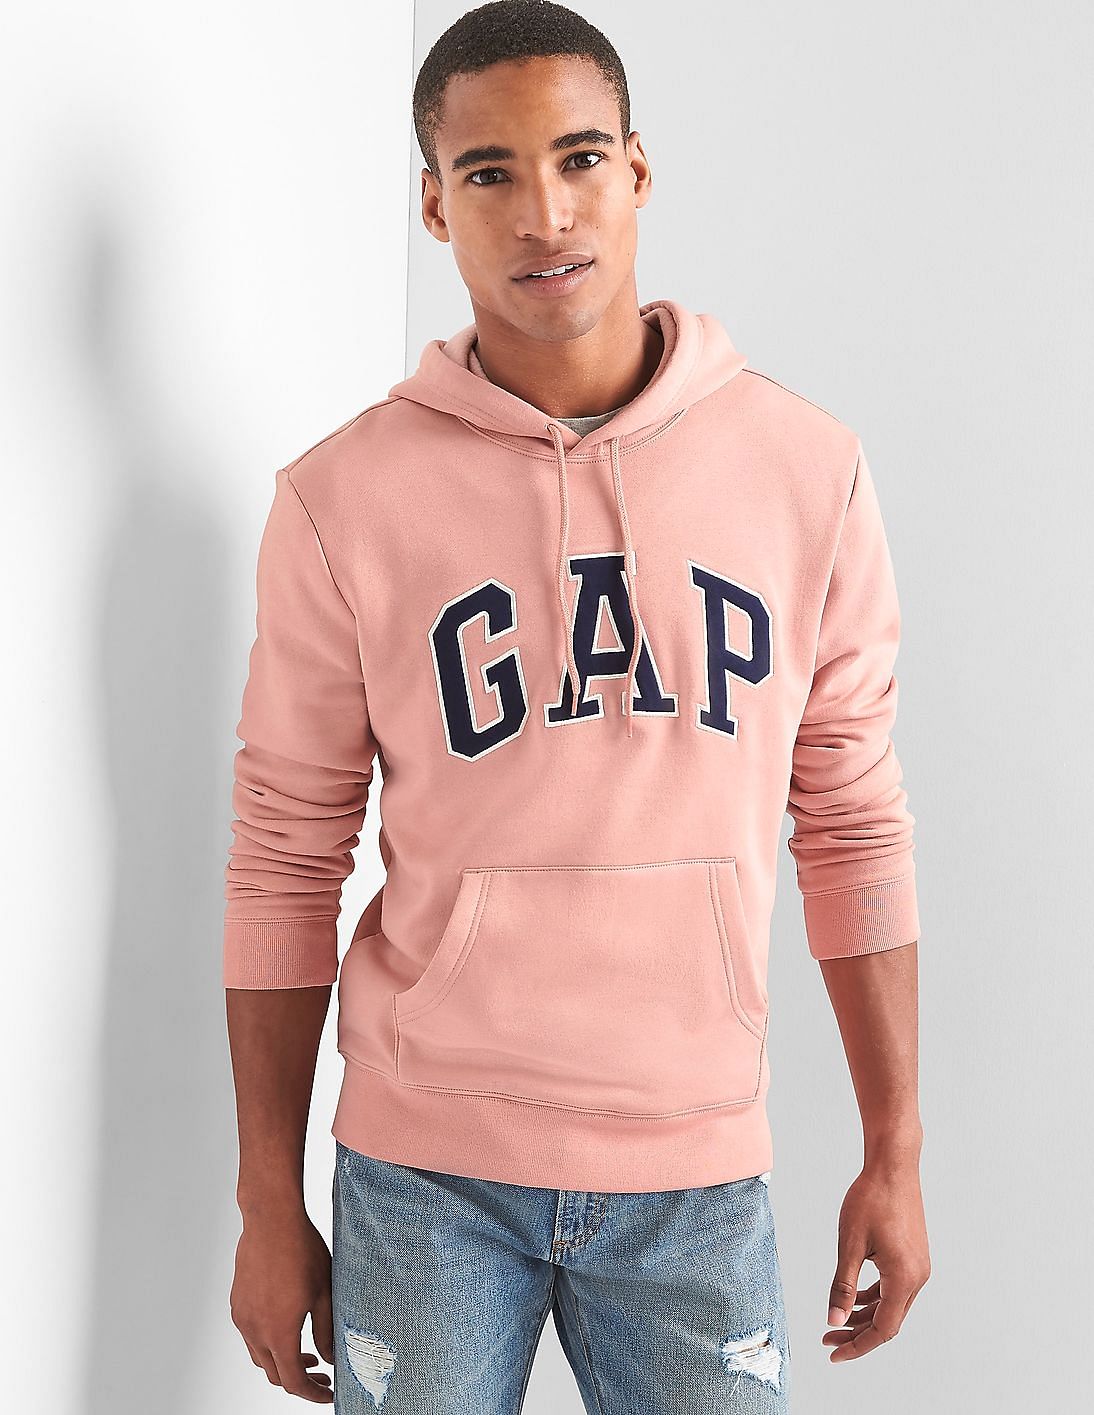 Buy > men light pink hoodie > in stock